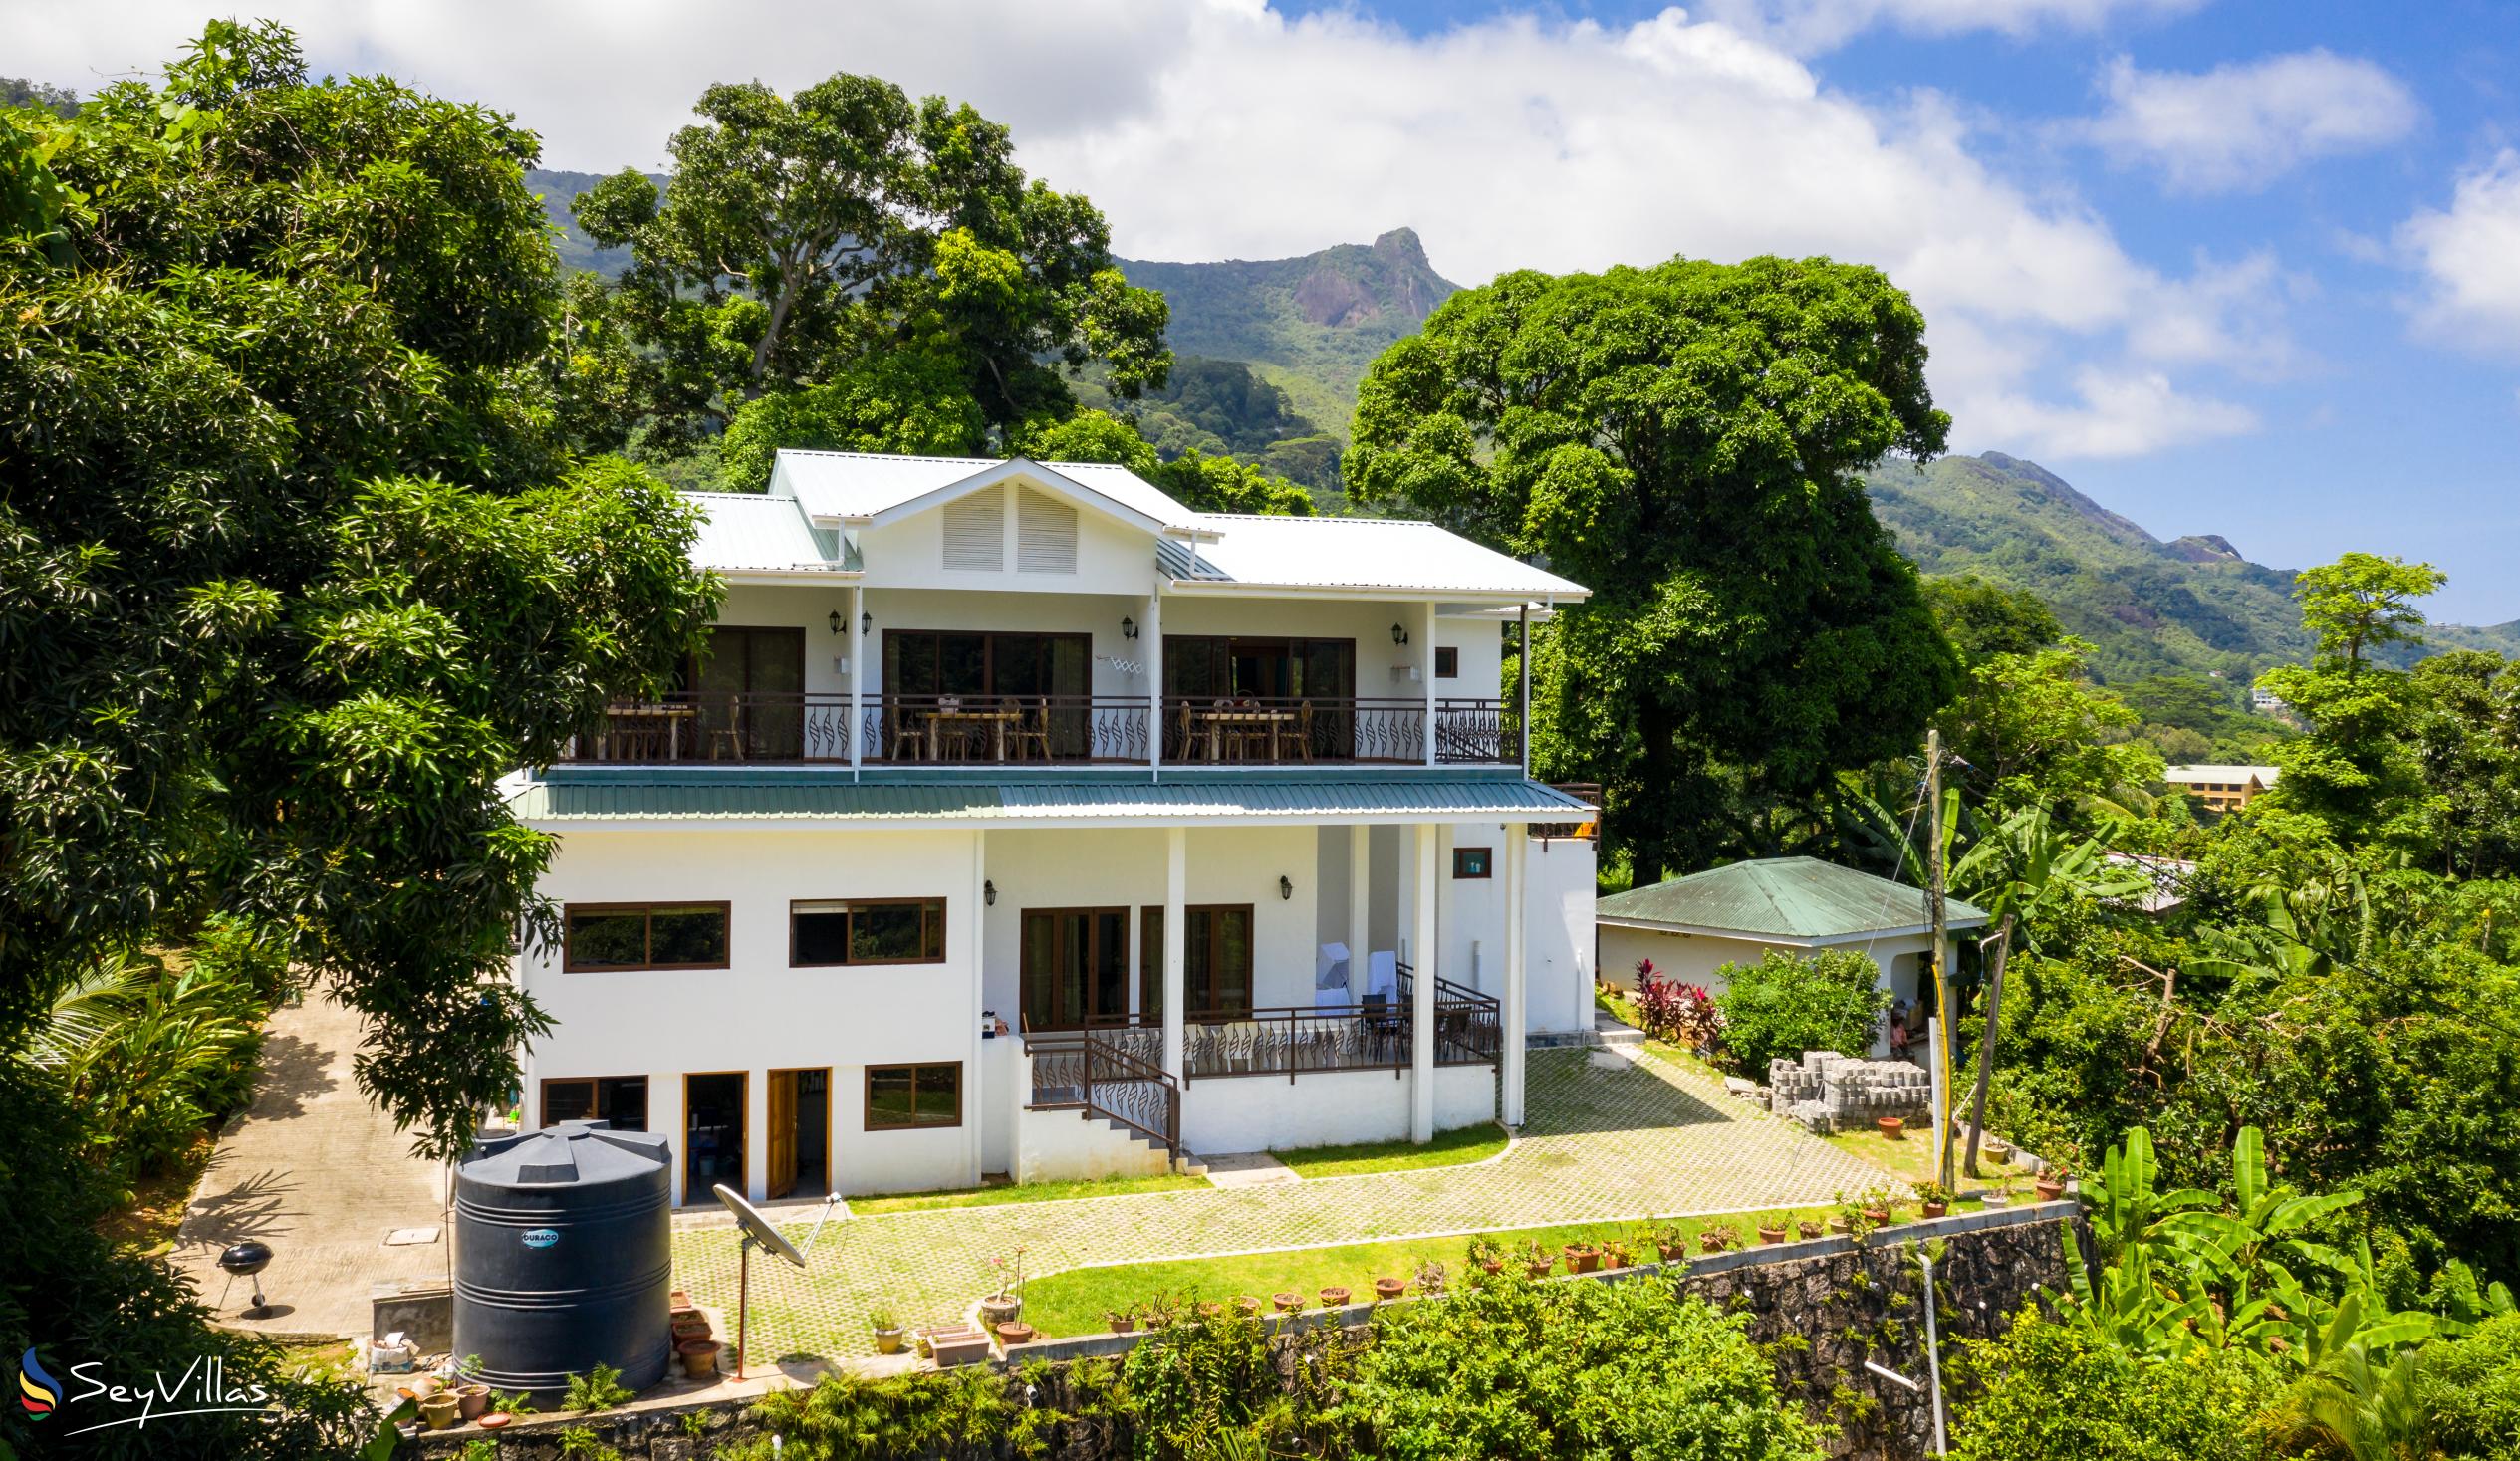 Photo 3: Tama's Holiday Apartments - Outdoor area - Mahé (Seychelles)